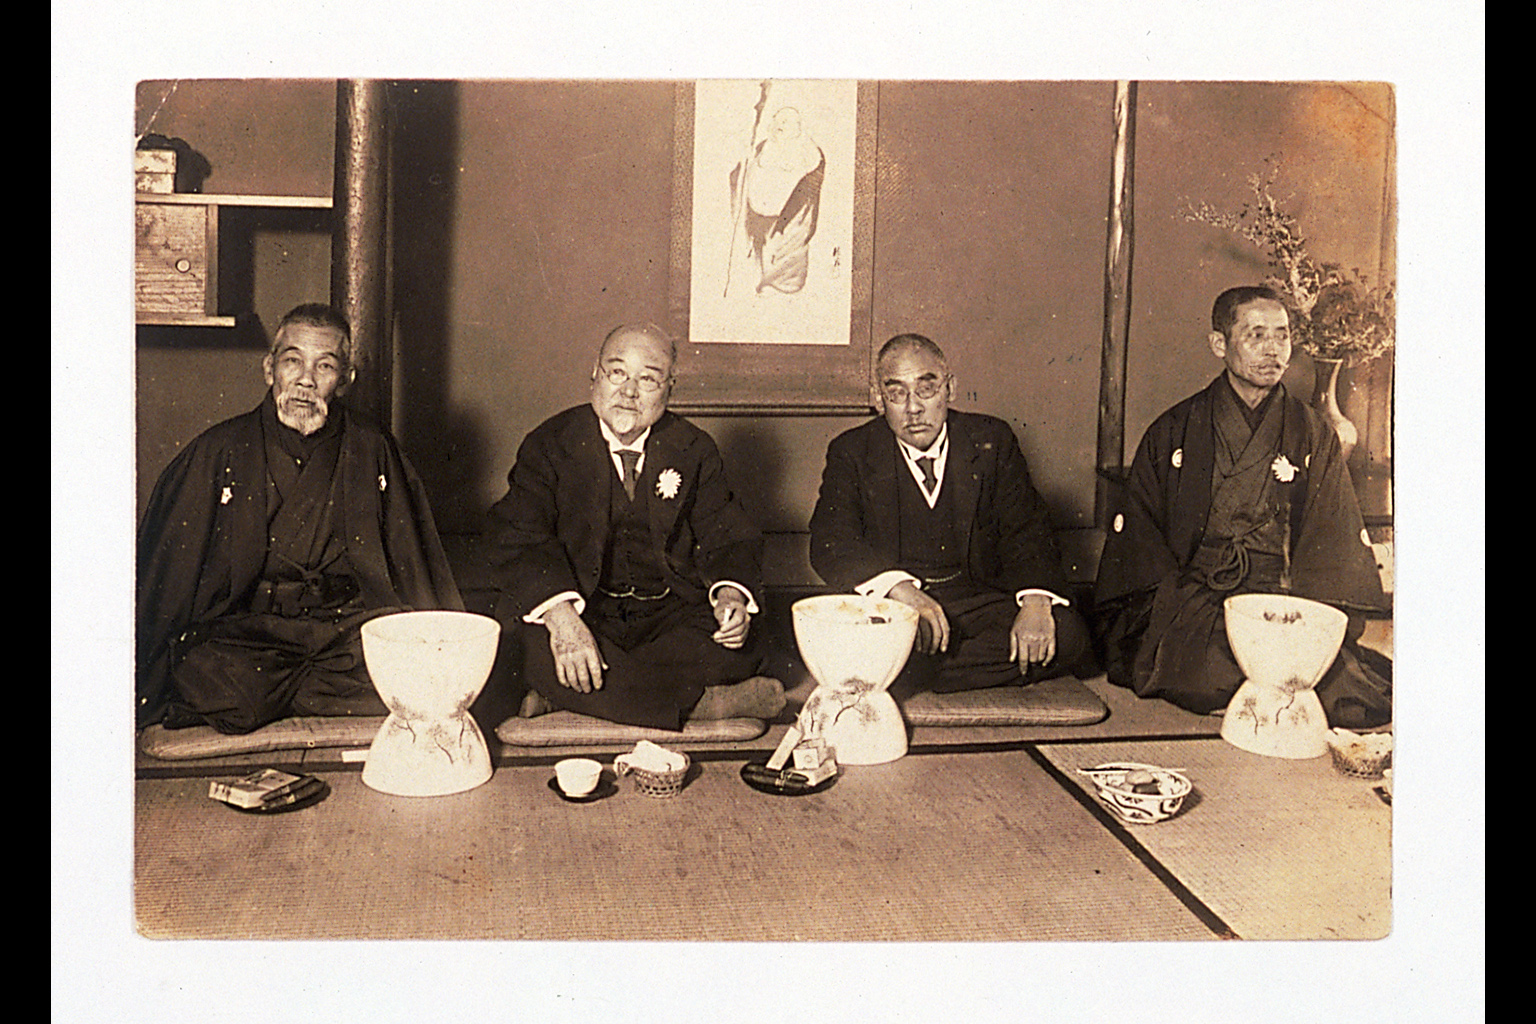 Photograph of INUKAI Tsuyoshi, TAKAHASHI Korekiyo, KATO Takaaki, and OZAKI Yukio(larger)